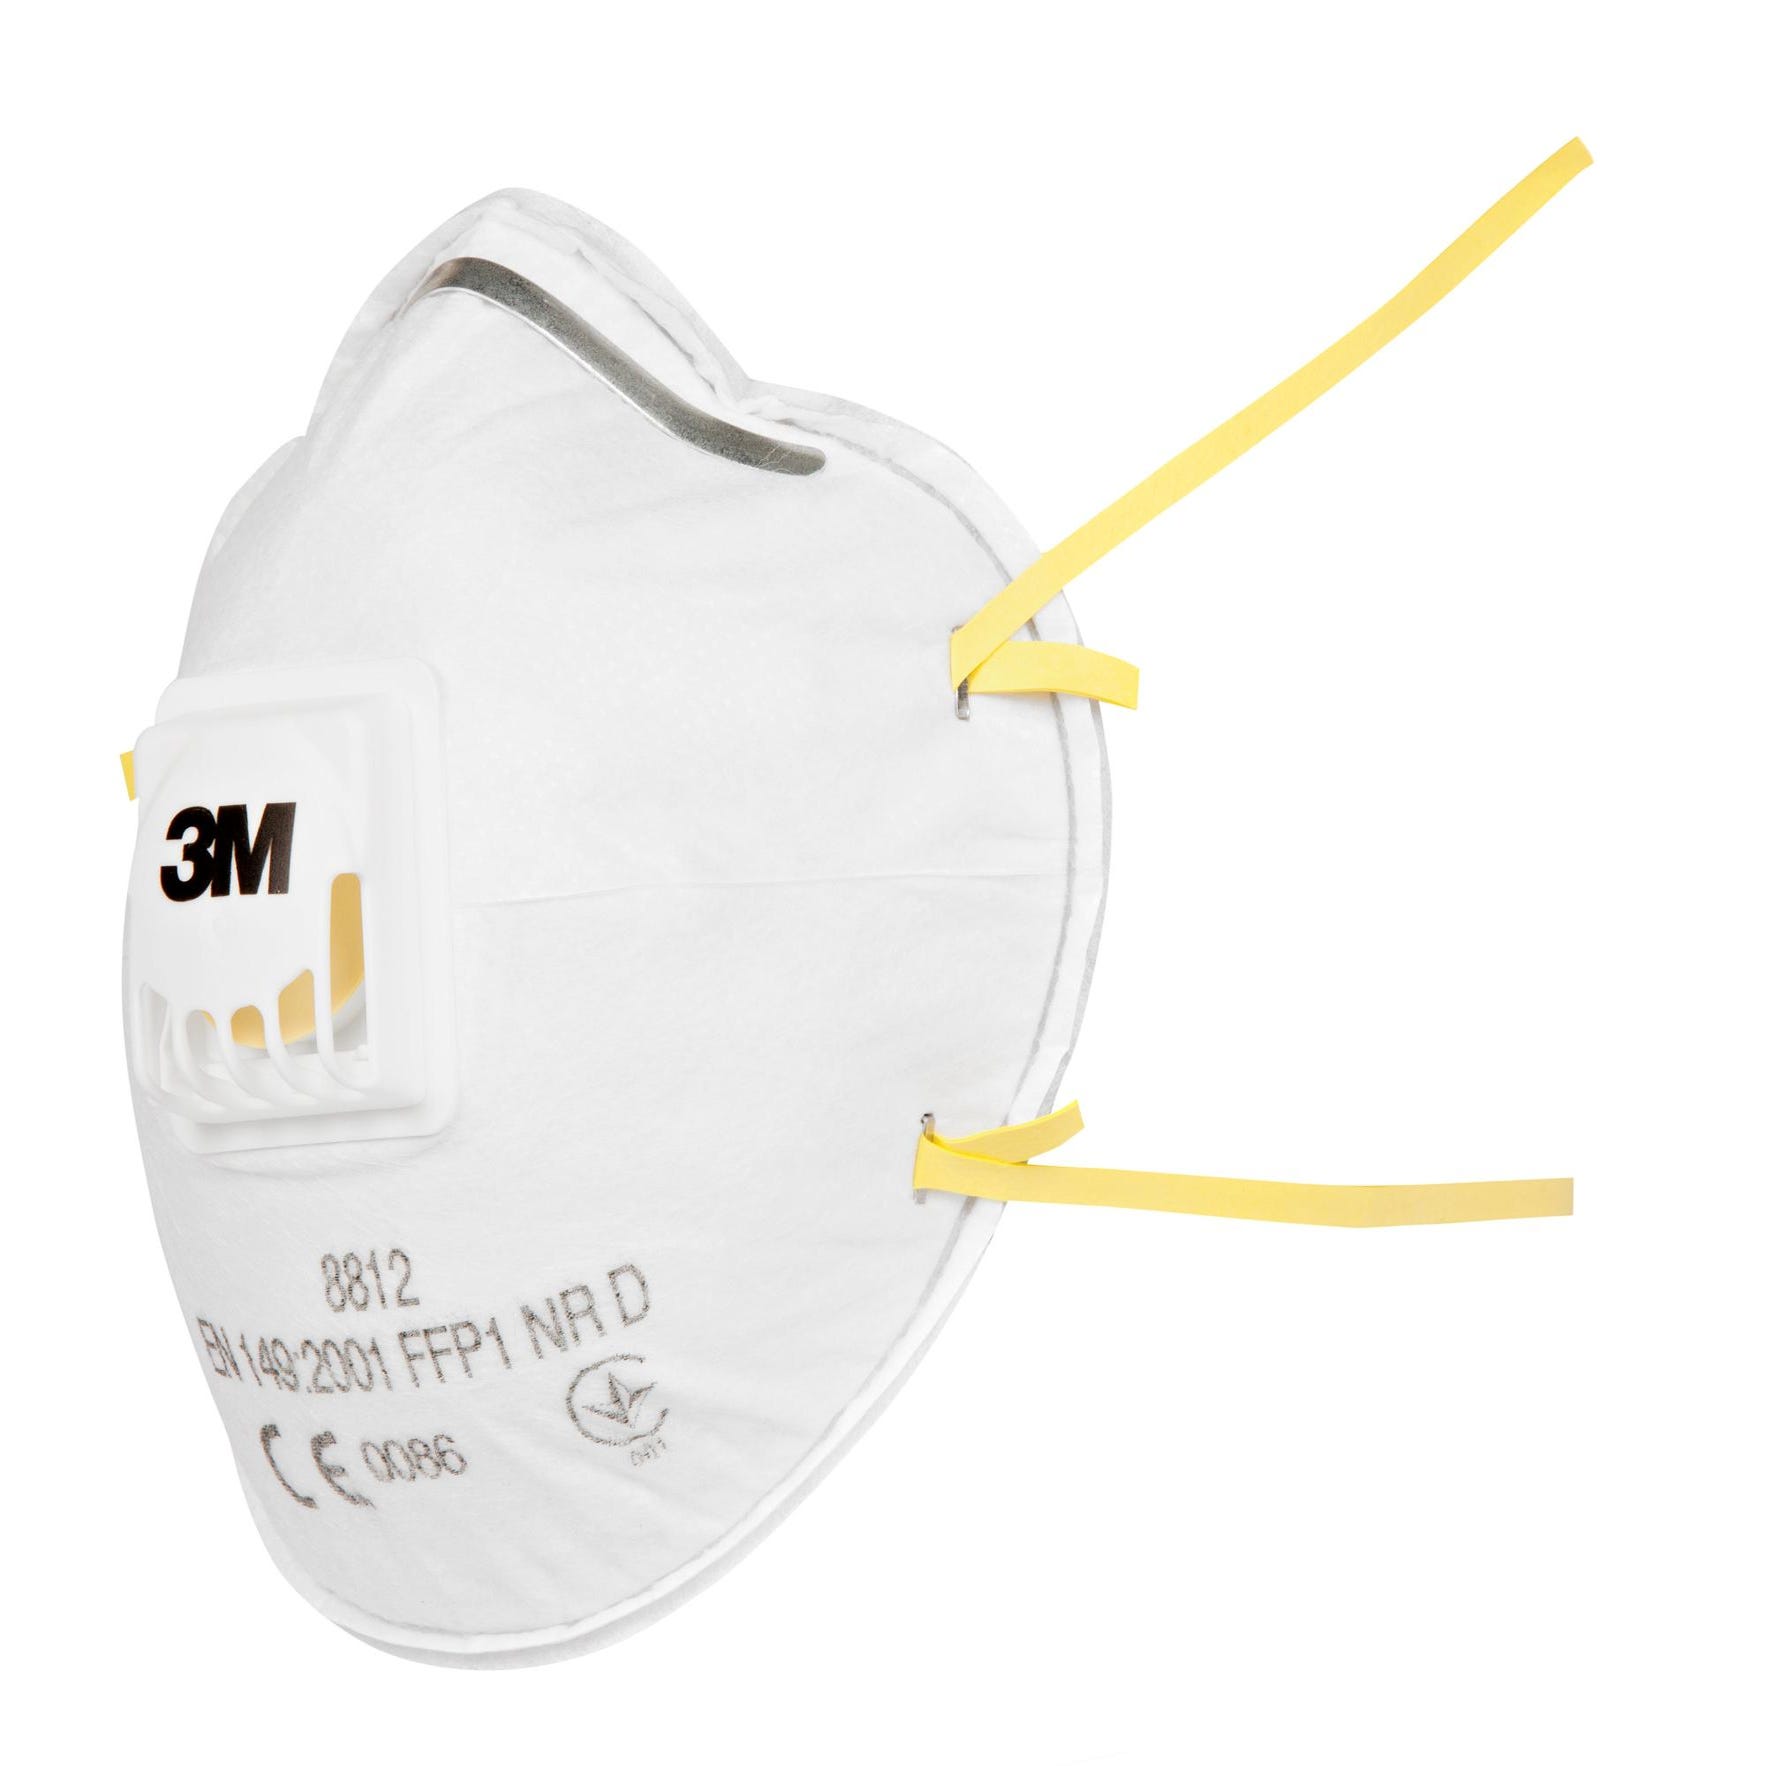 Masque anti-poussières FFP1 avec valve - 8812 - 3M